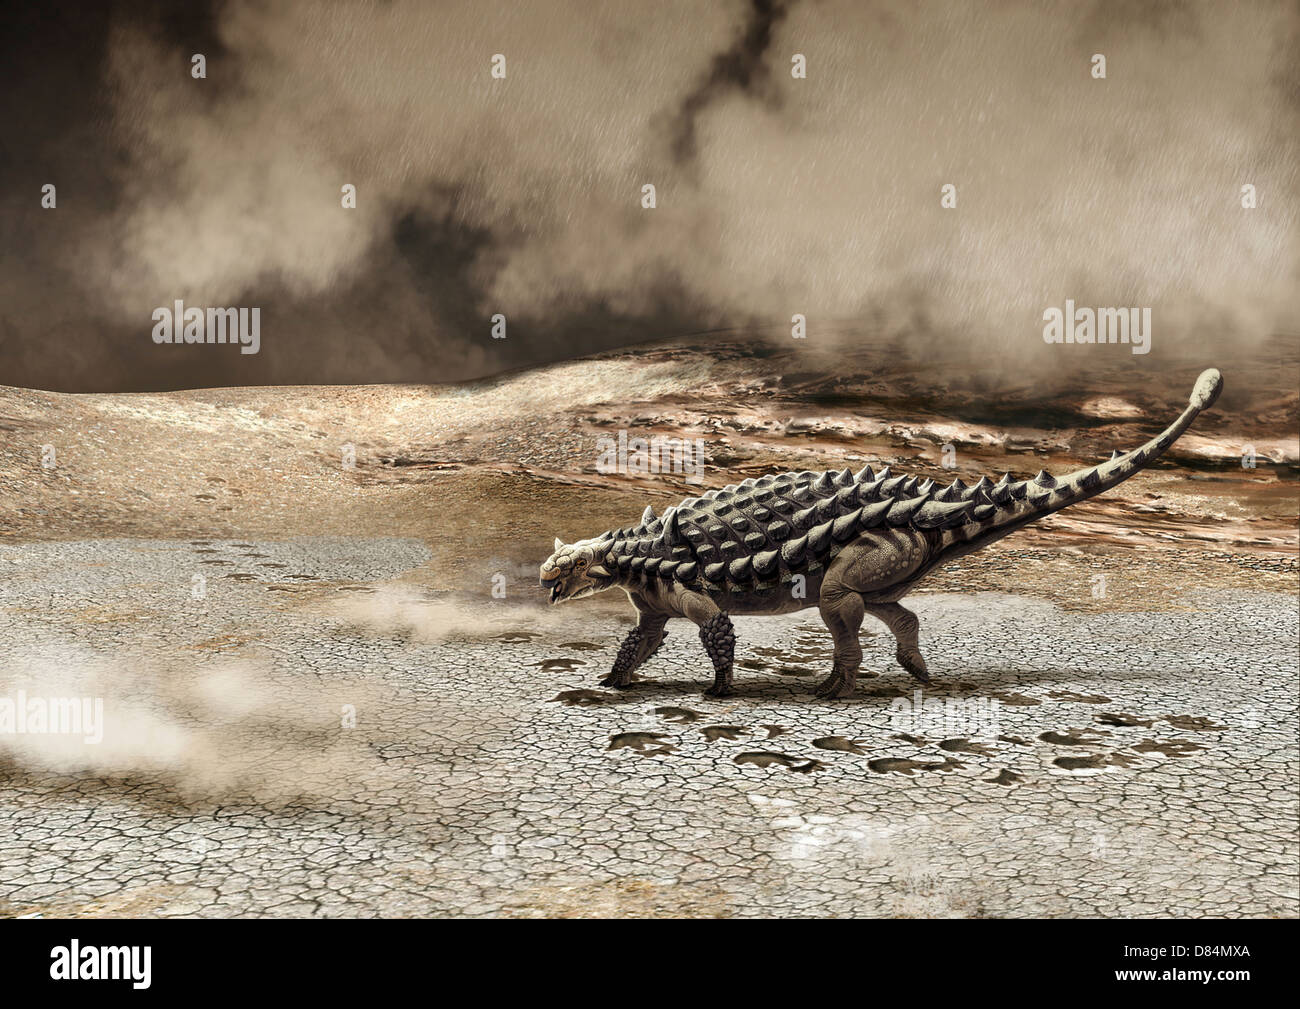 Un Saichania chulsanensis dinosauro è catturato in una tempesta di sabbia. Foto Stock